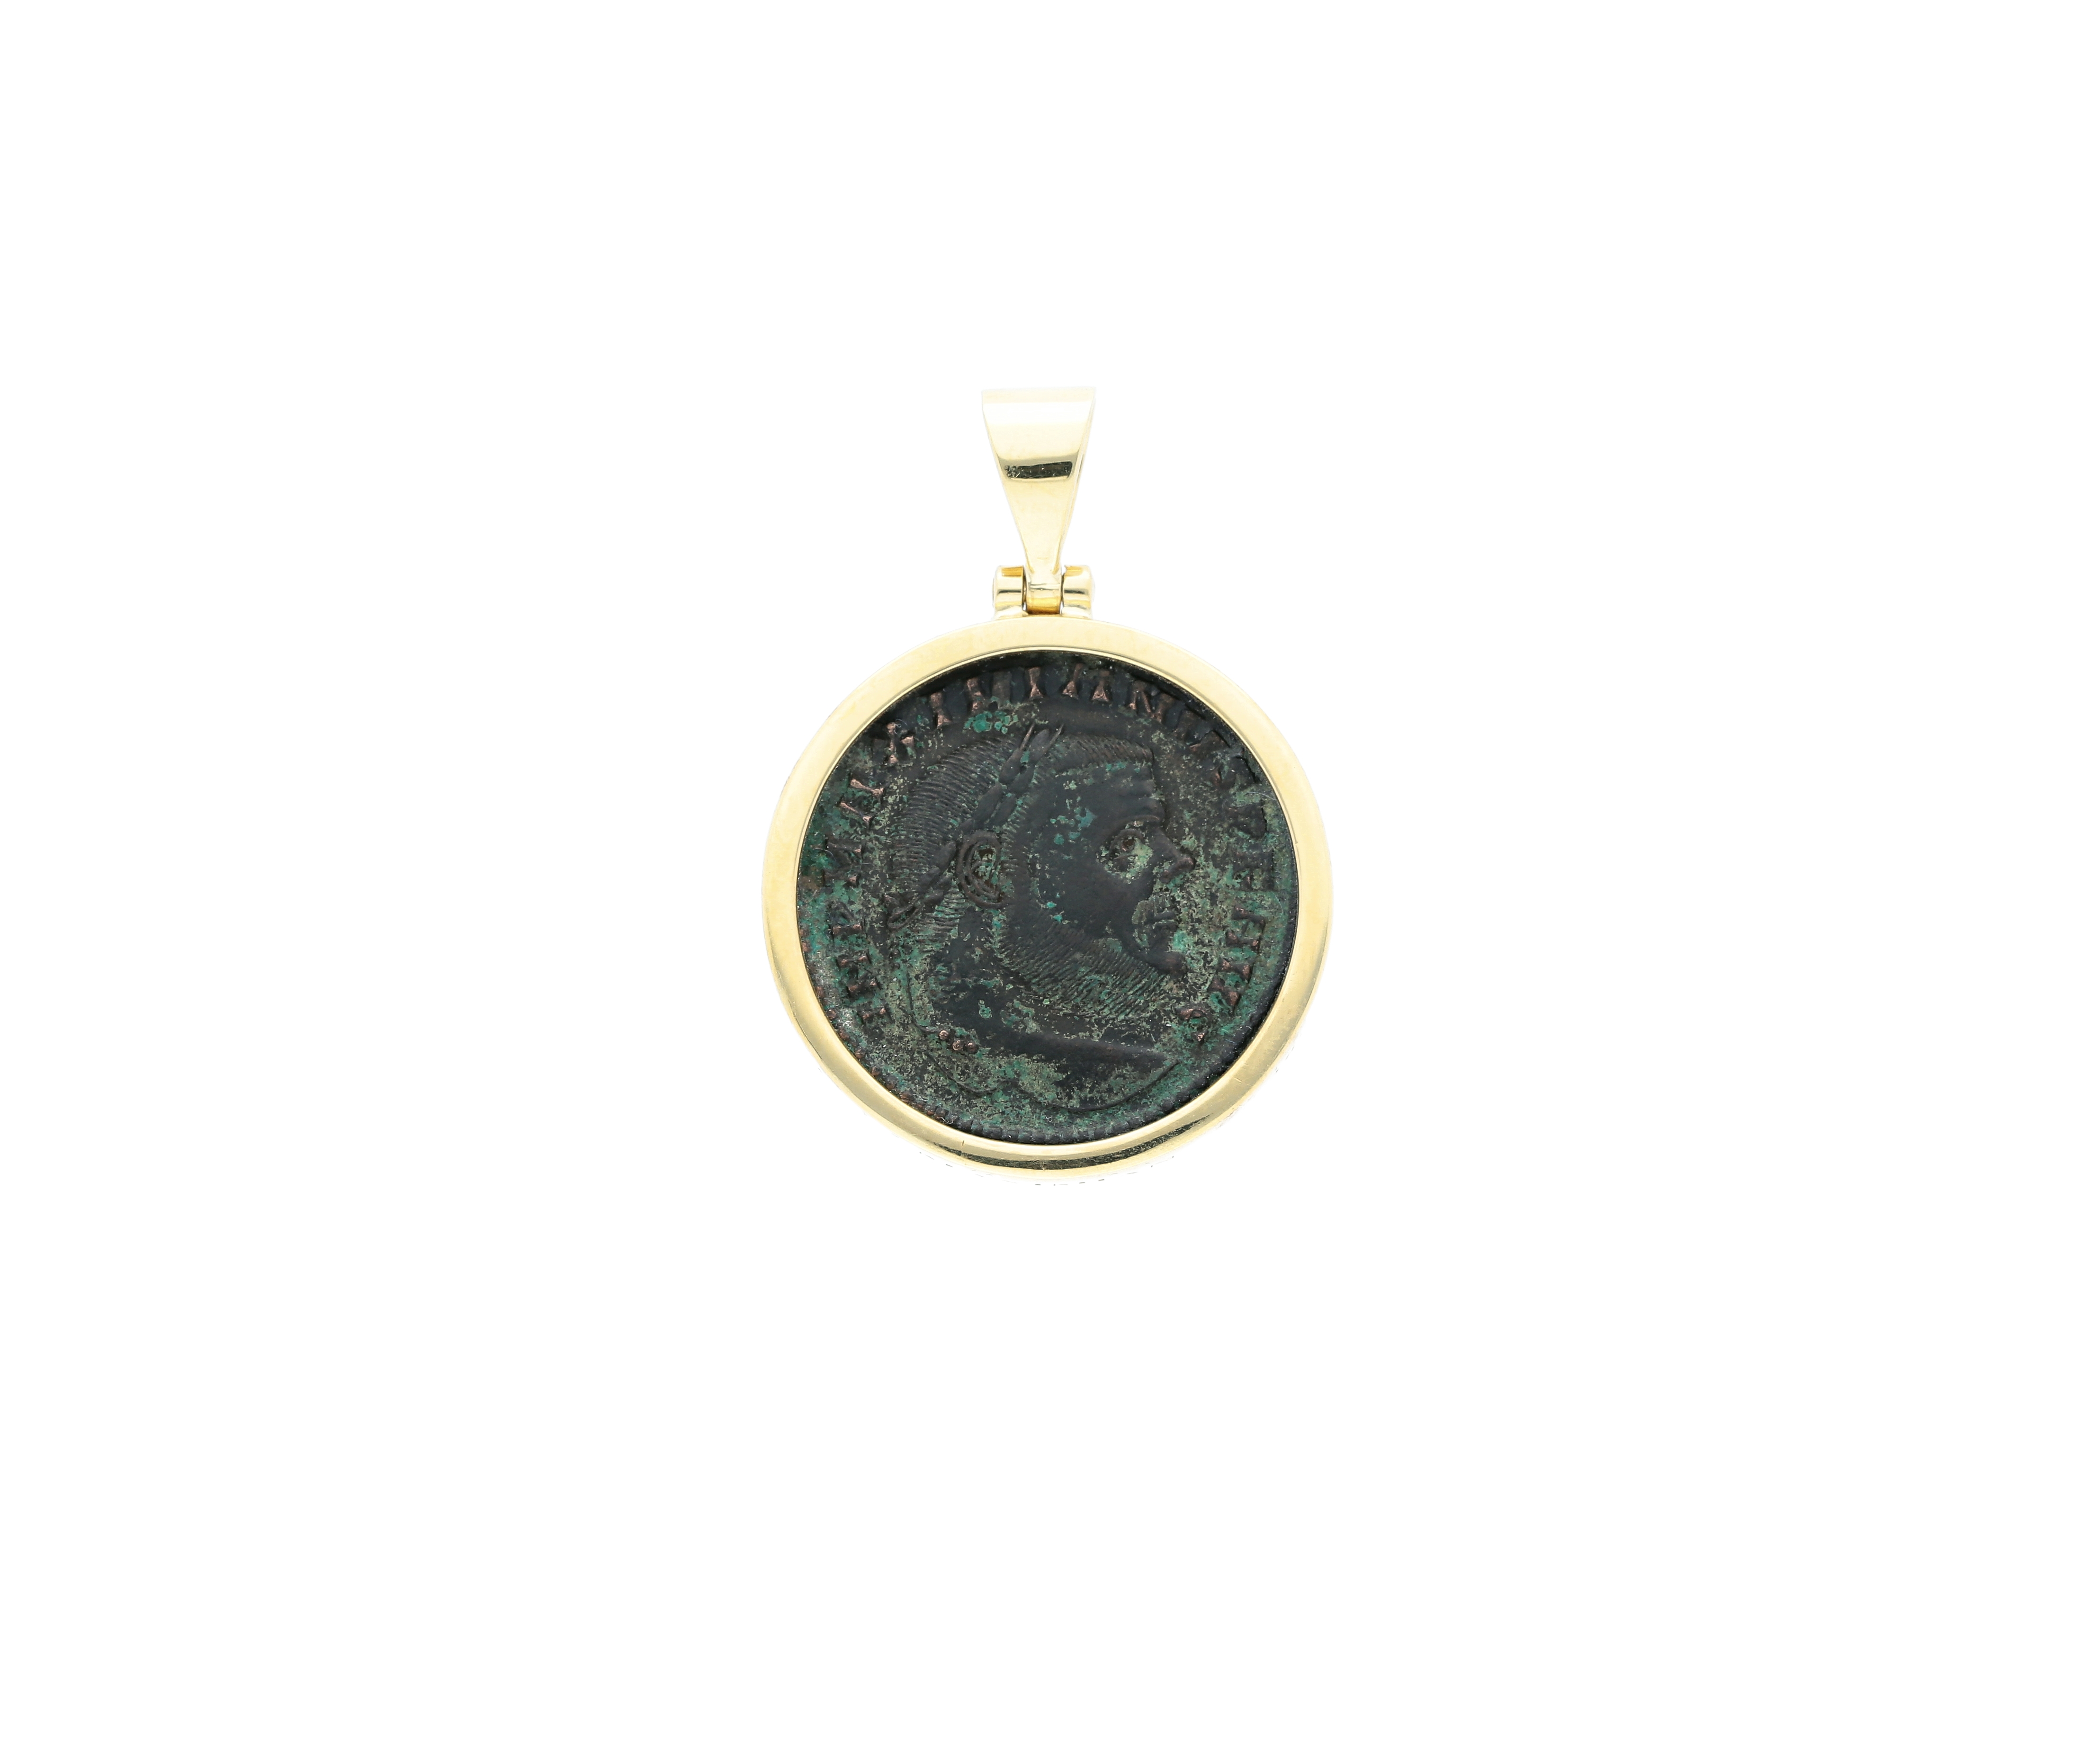 Roman Coin Emperor Maximian, Frame 18kt yellow gold